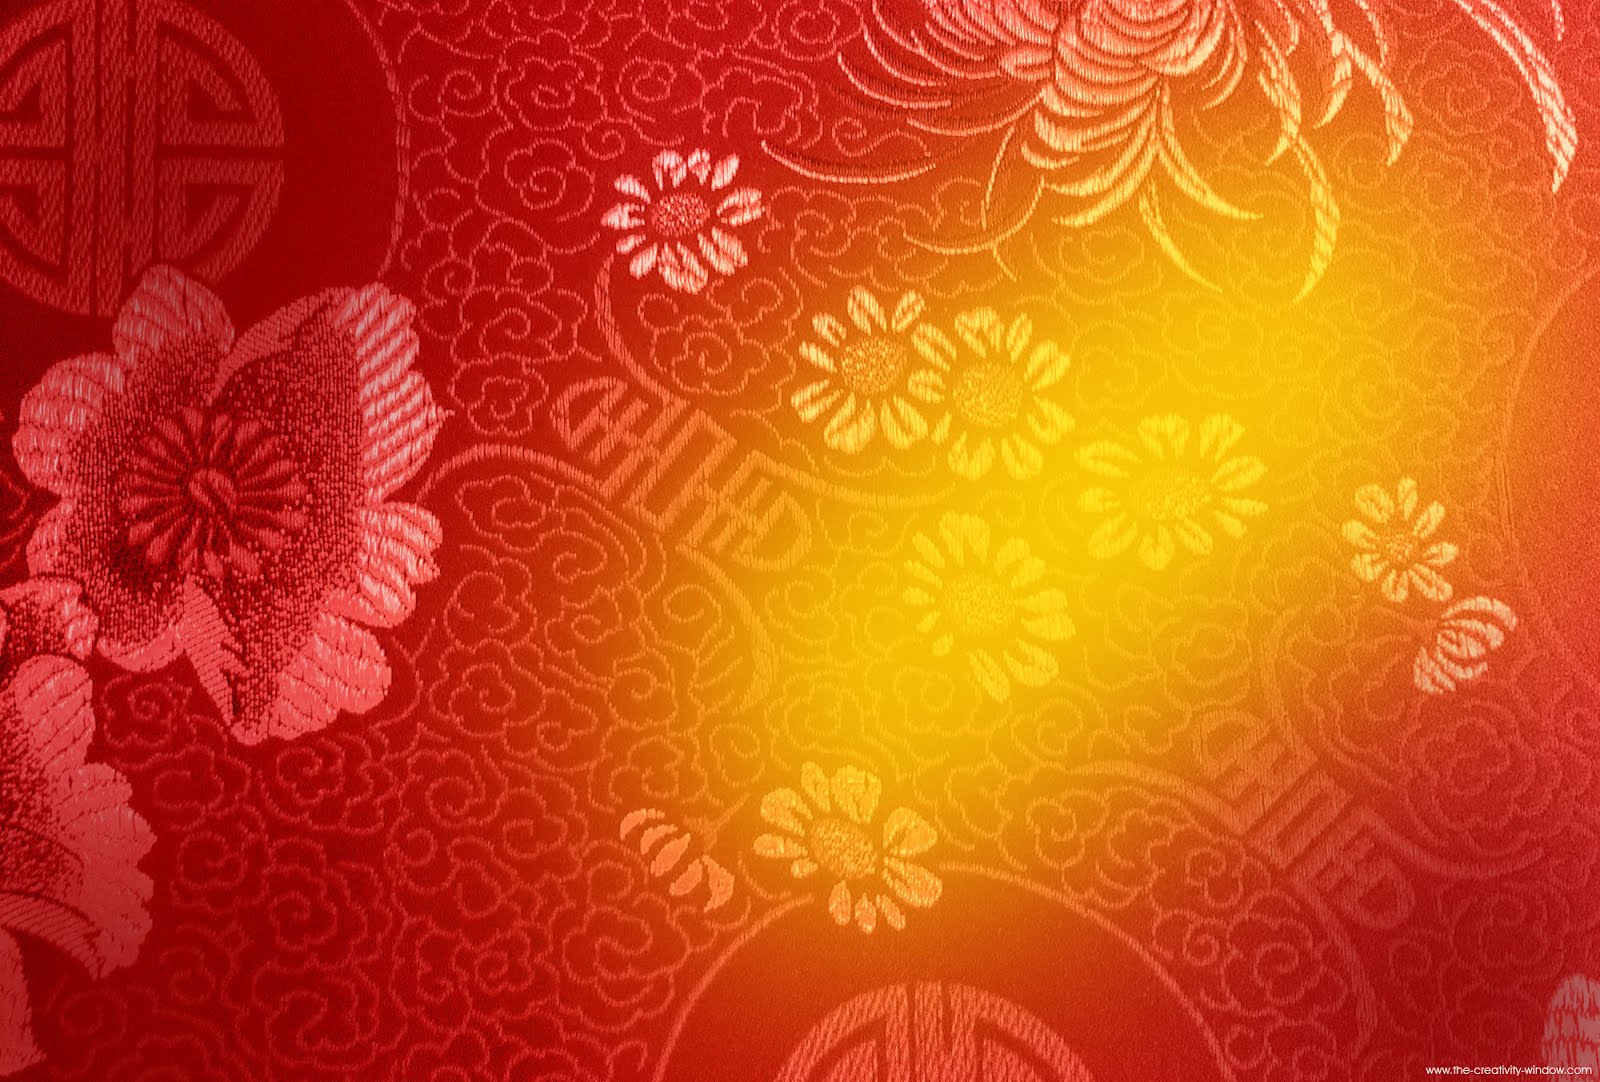 new design wallpaper,pattern,red,floral design,orange,design